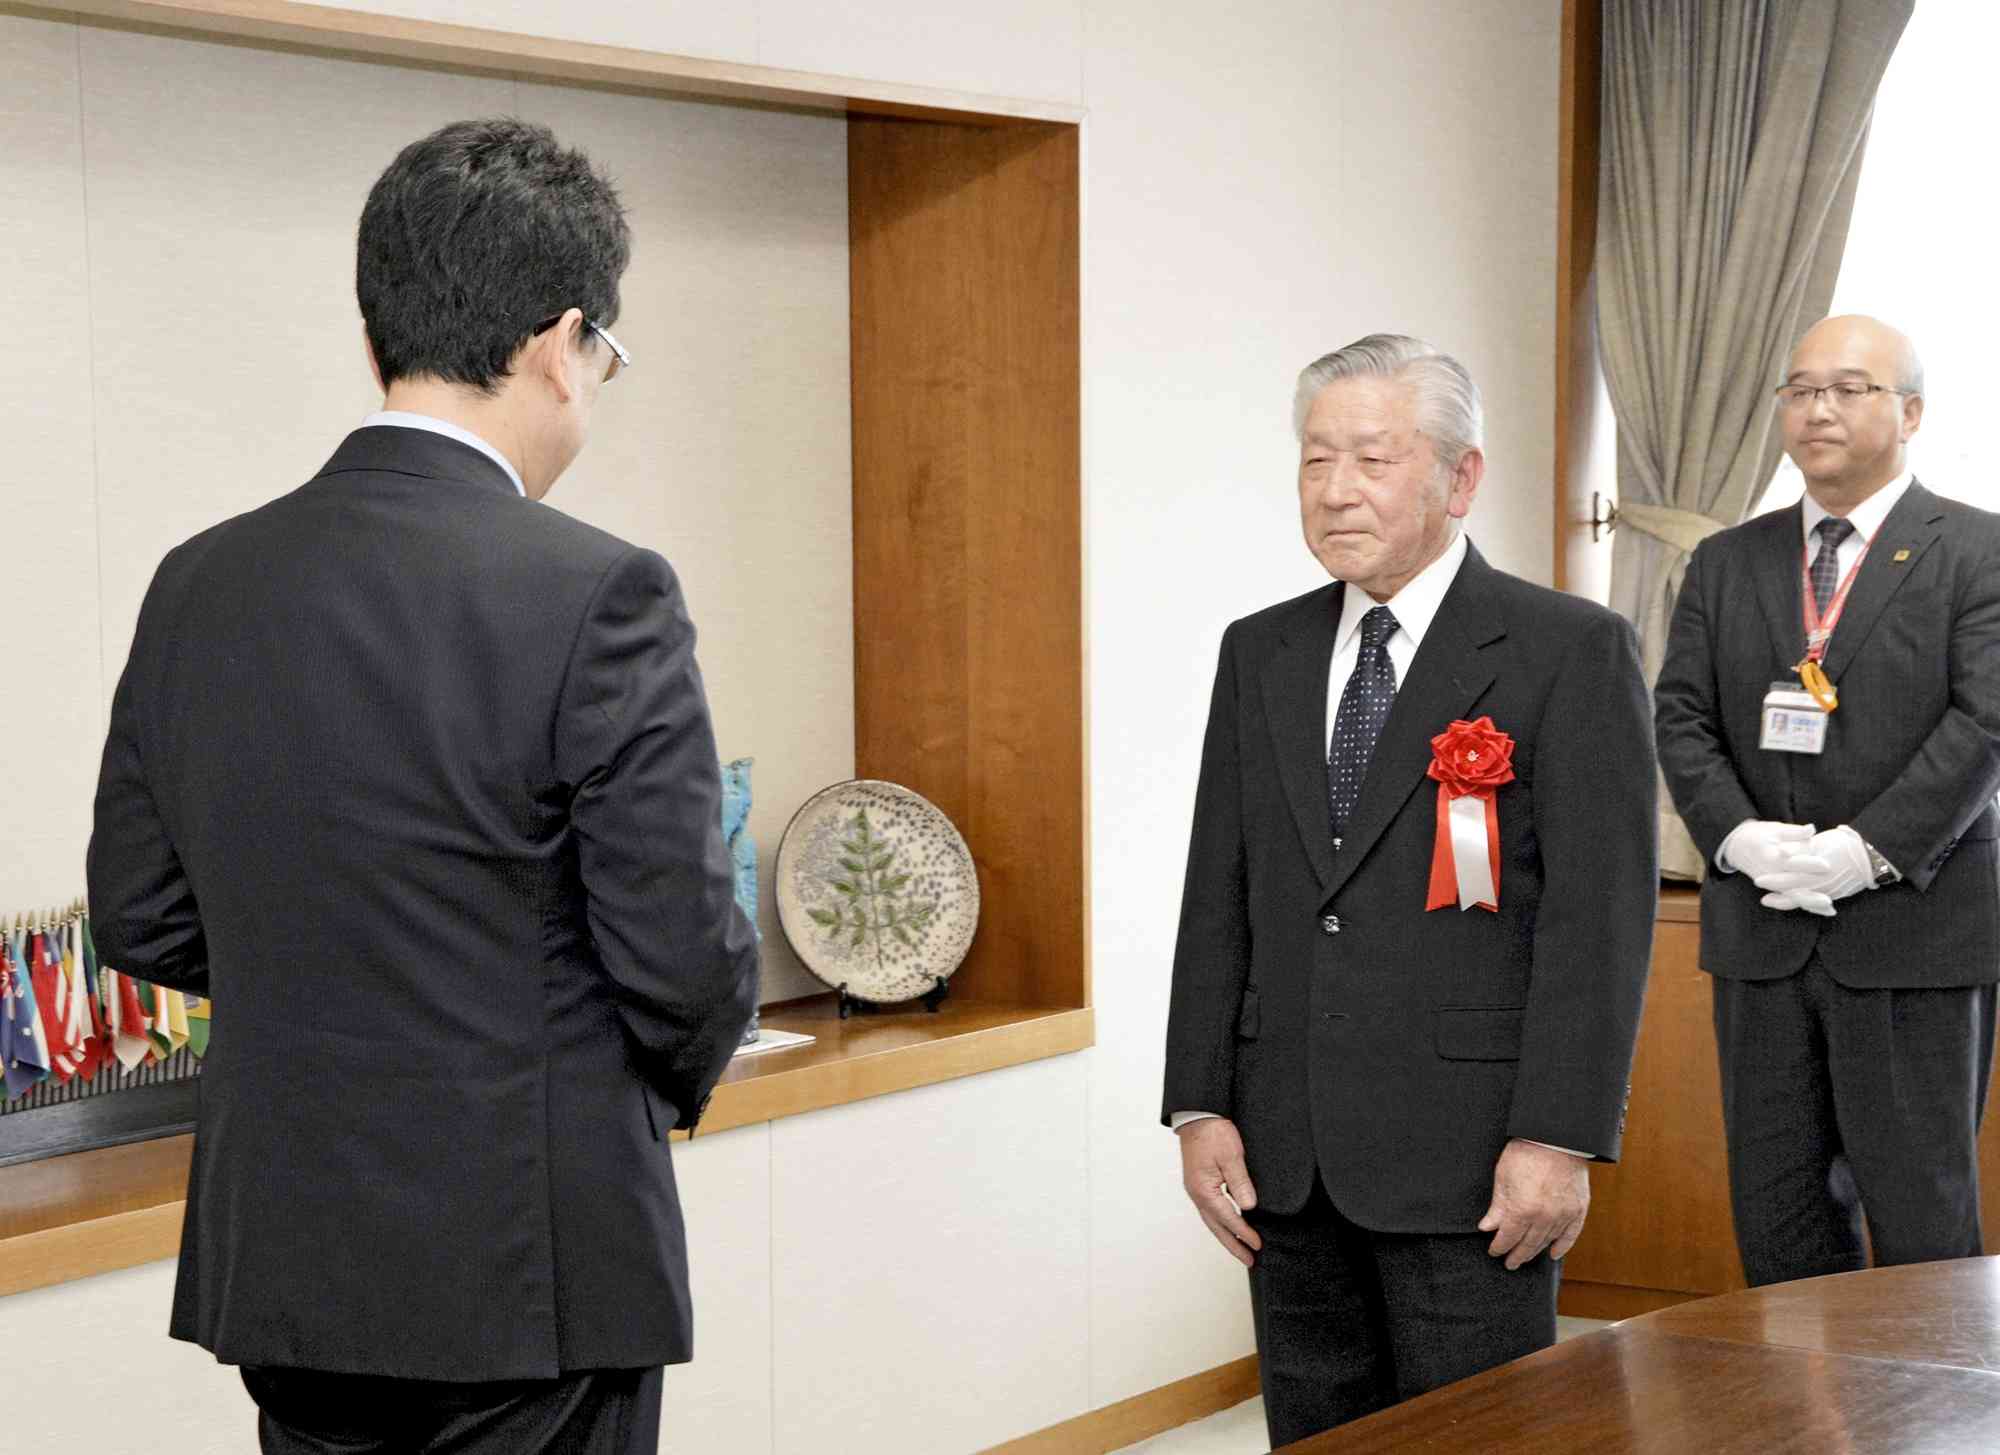 熱血指導で知られた岩崎健一さん。写真は2016年、熊本市スポーツ功労賞の表彰式